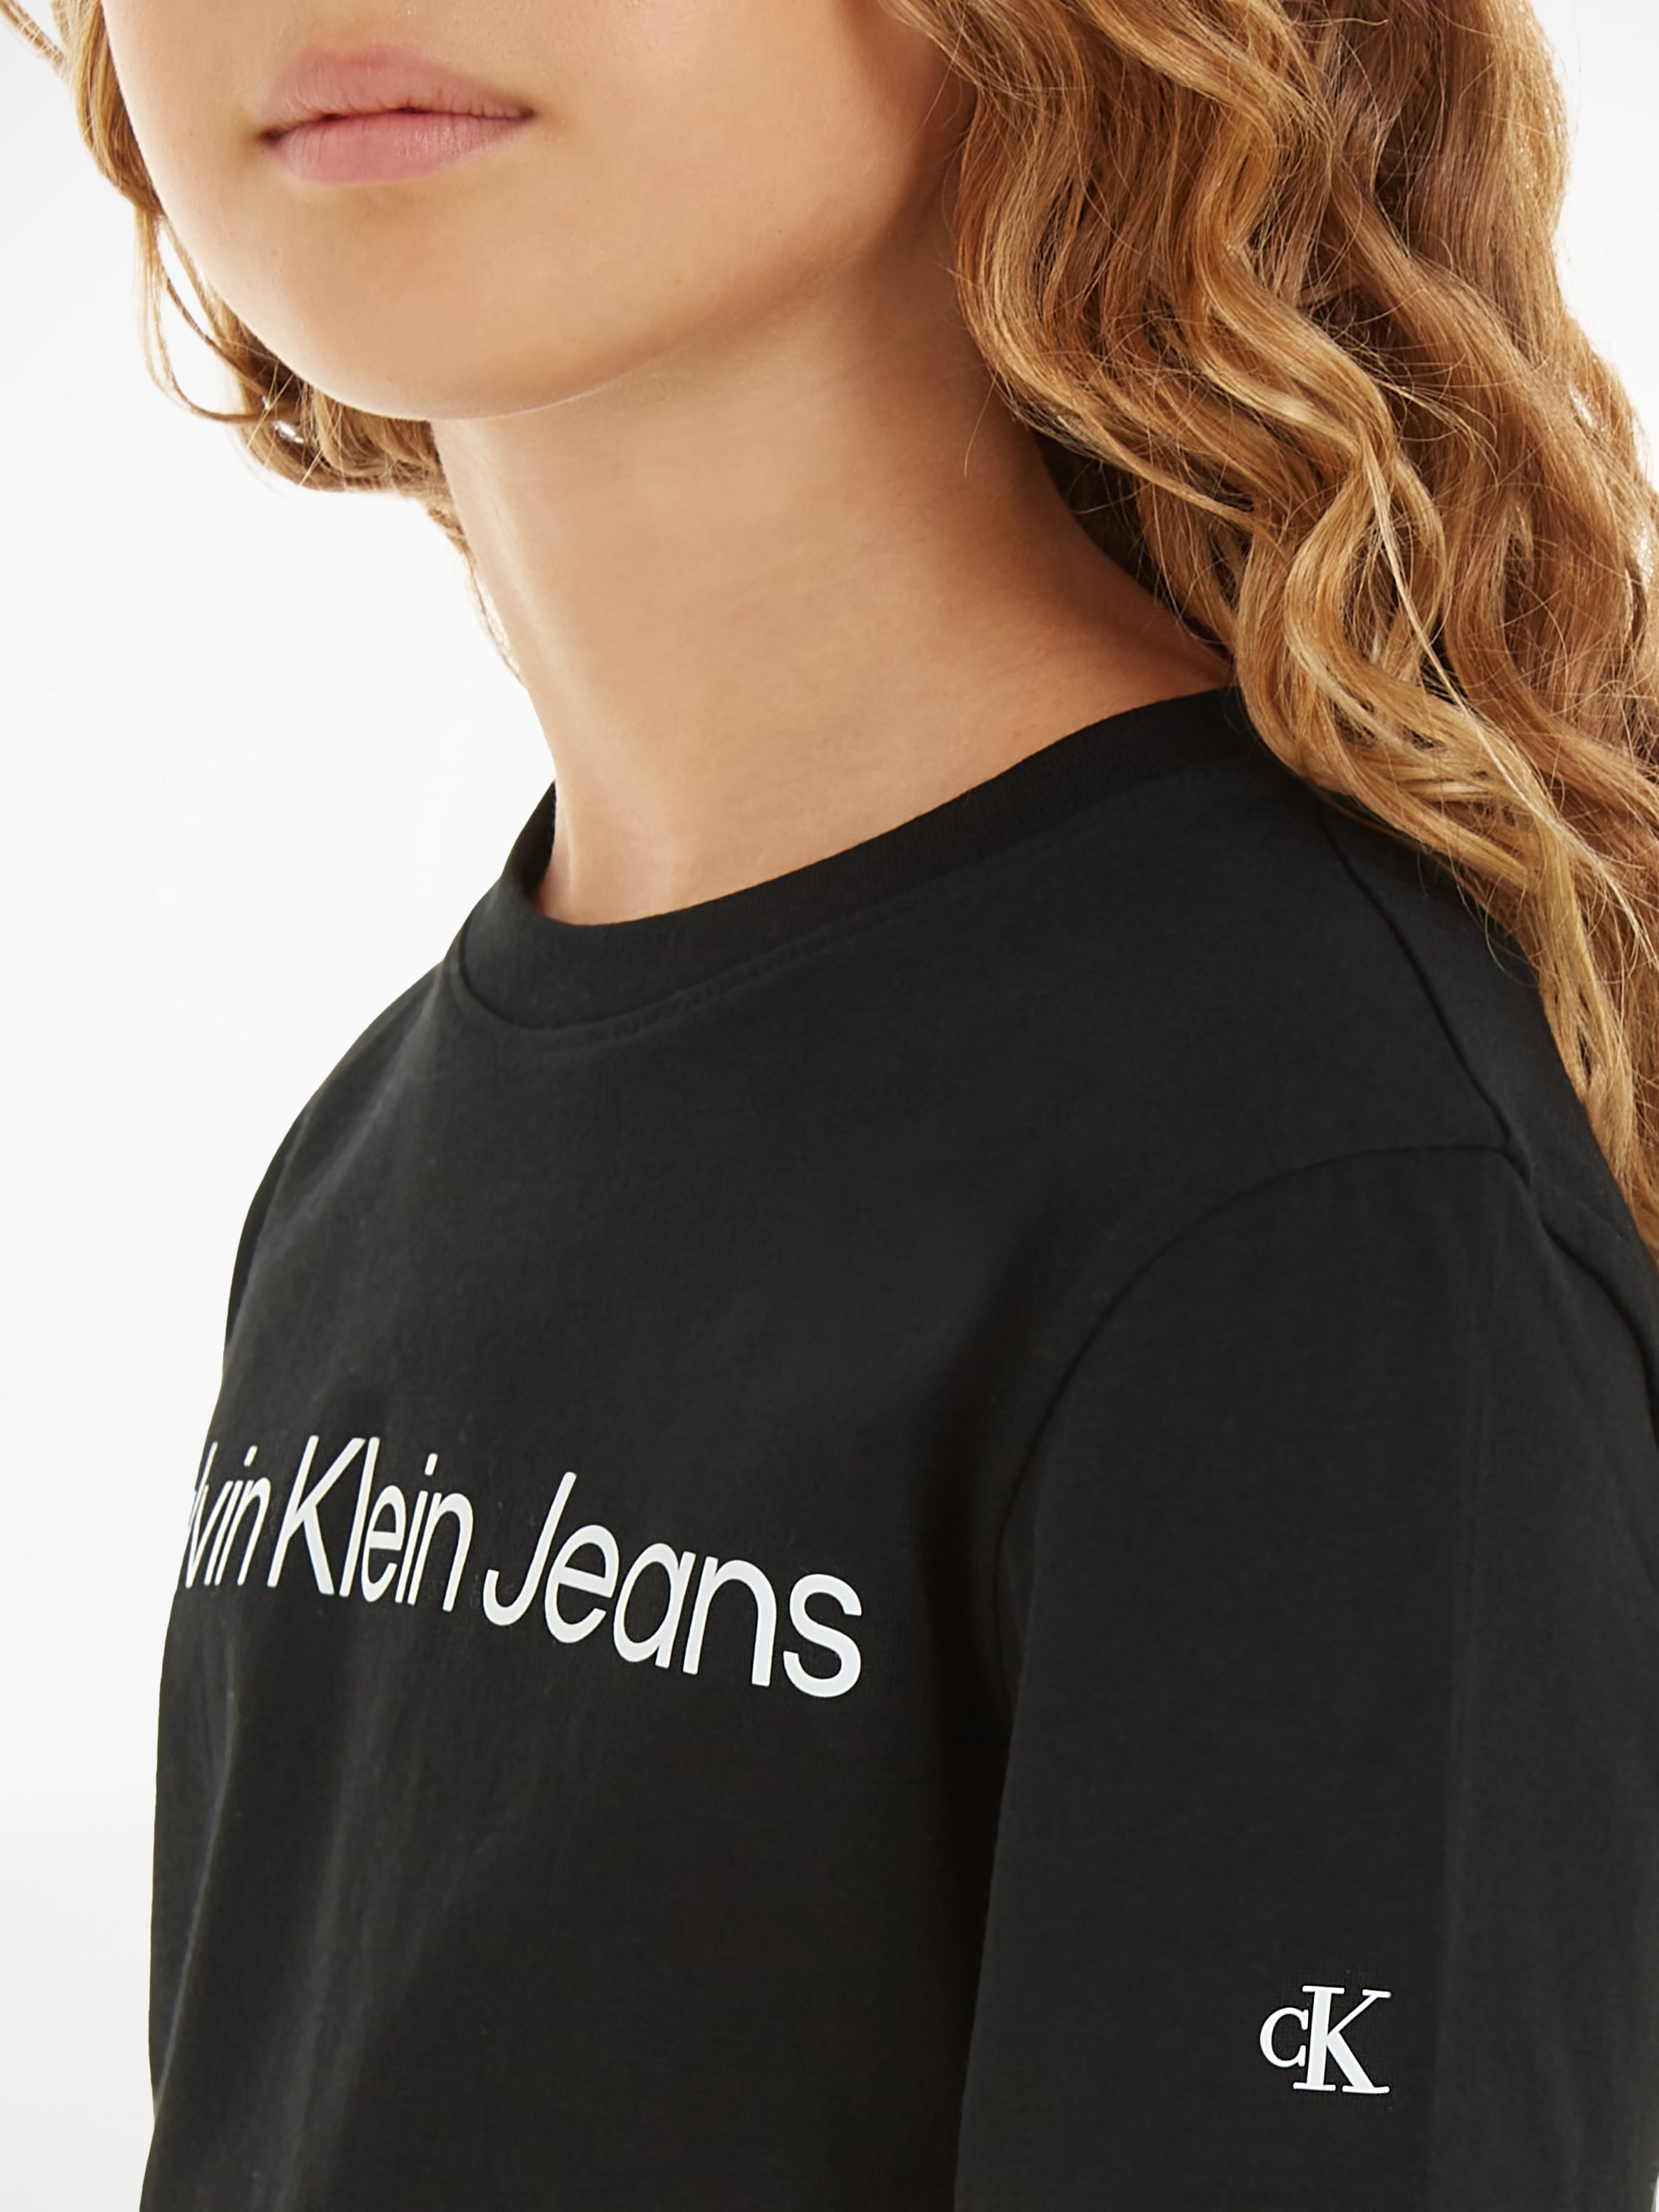 Calvin Klein Jeans Logoschriftzug Sweatshirt shoppen T-SHIRT«, LOGO SS »INST. online mit